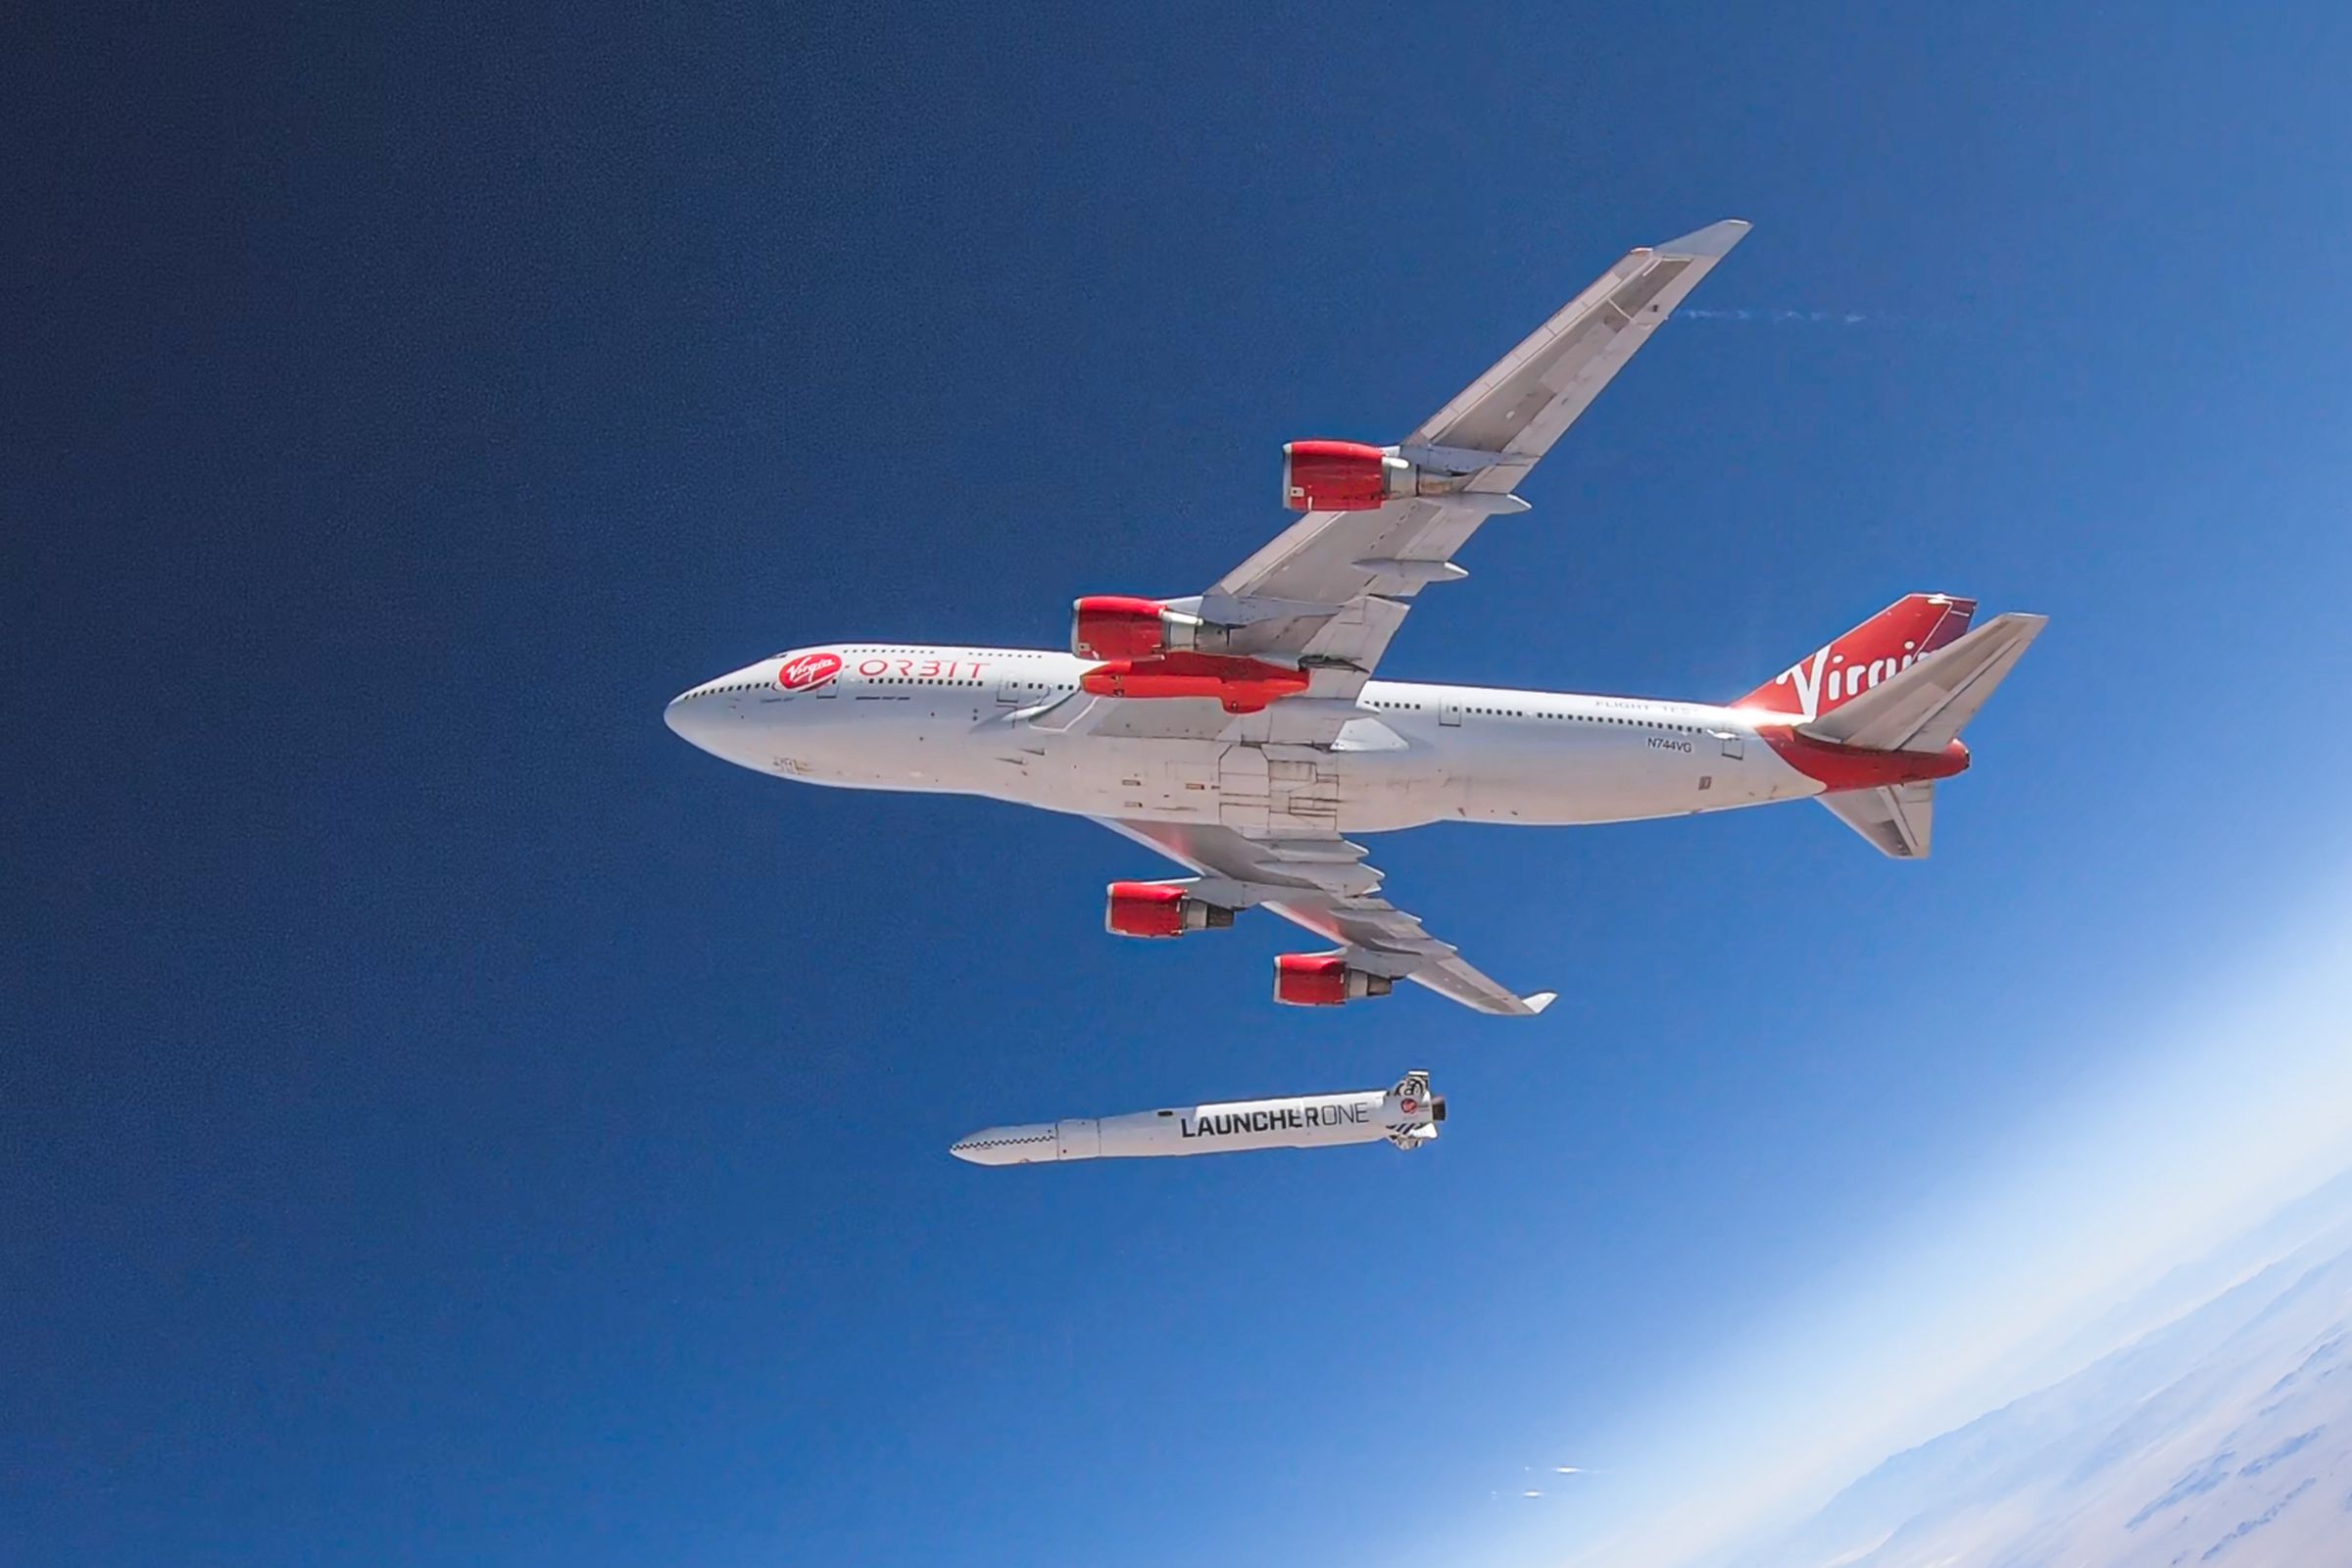 Virgin Orbit’s 747 Cosmic Girl and rocket LauncherOne